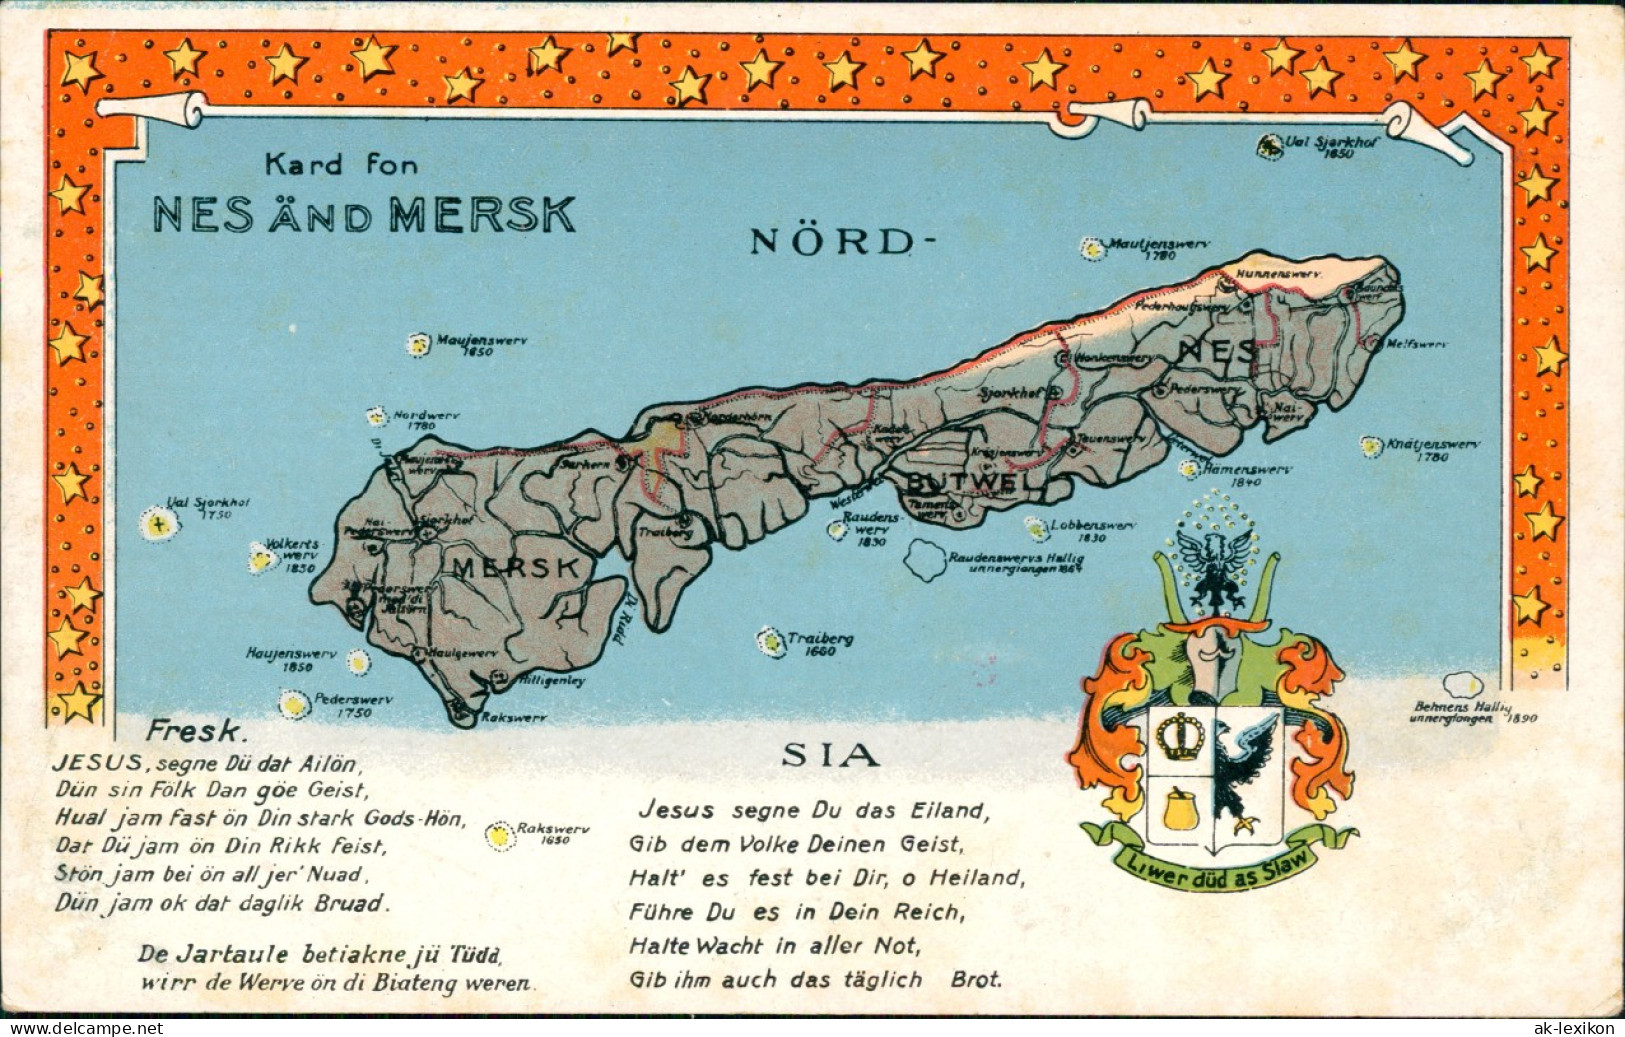 Postcard .Dänemark - NES AND MERSK Dänemark Danmark Landkarten AK 1912 - Danemark